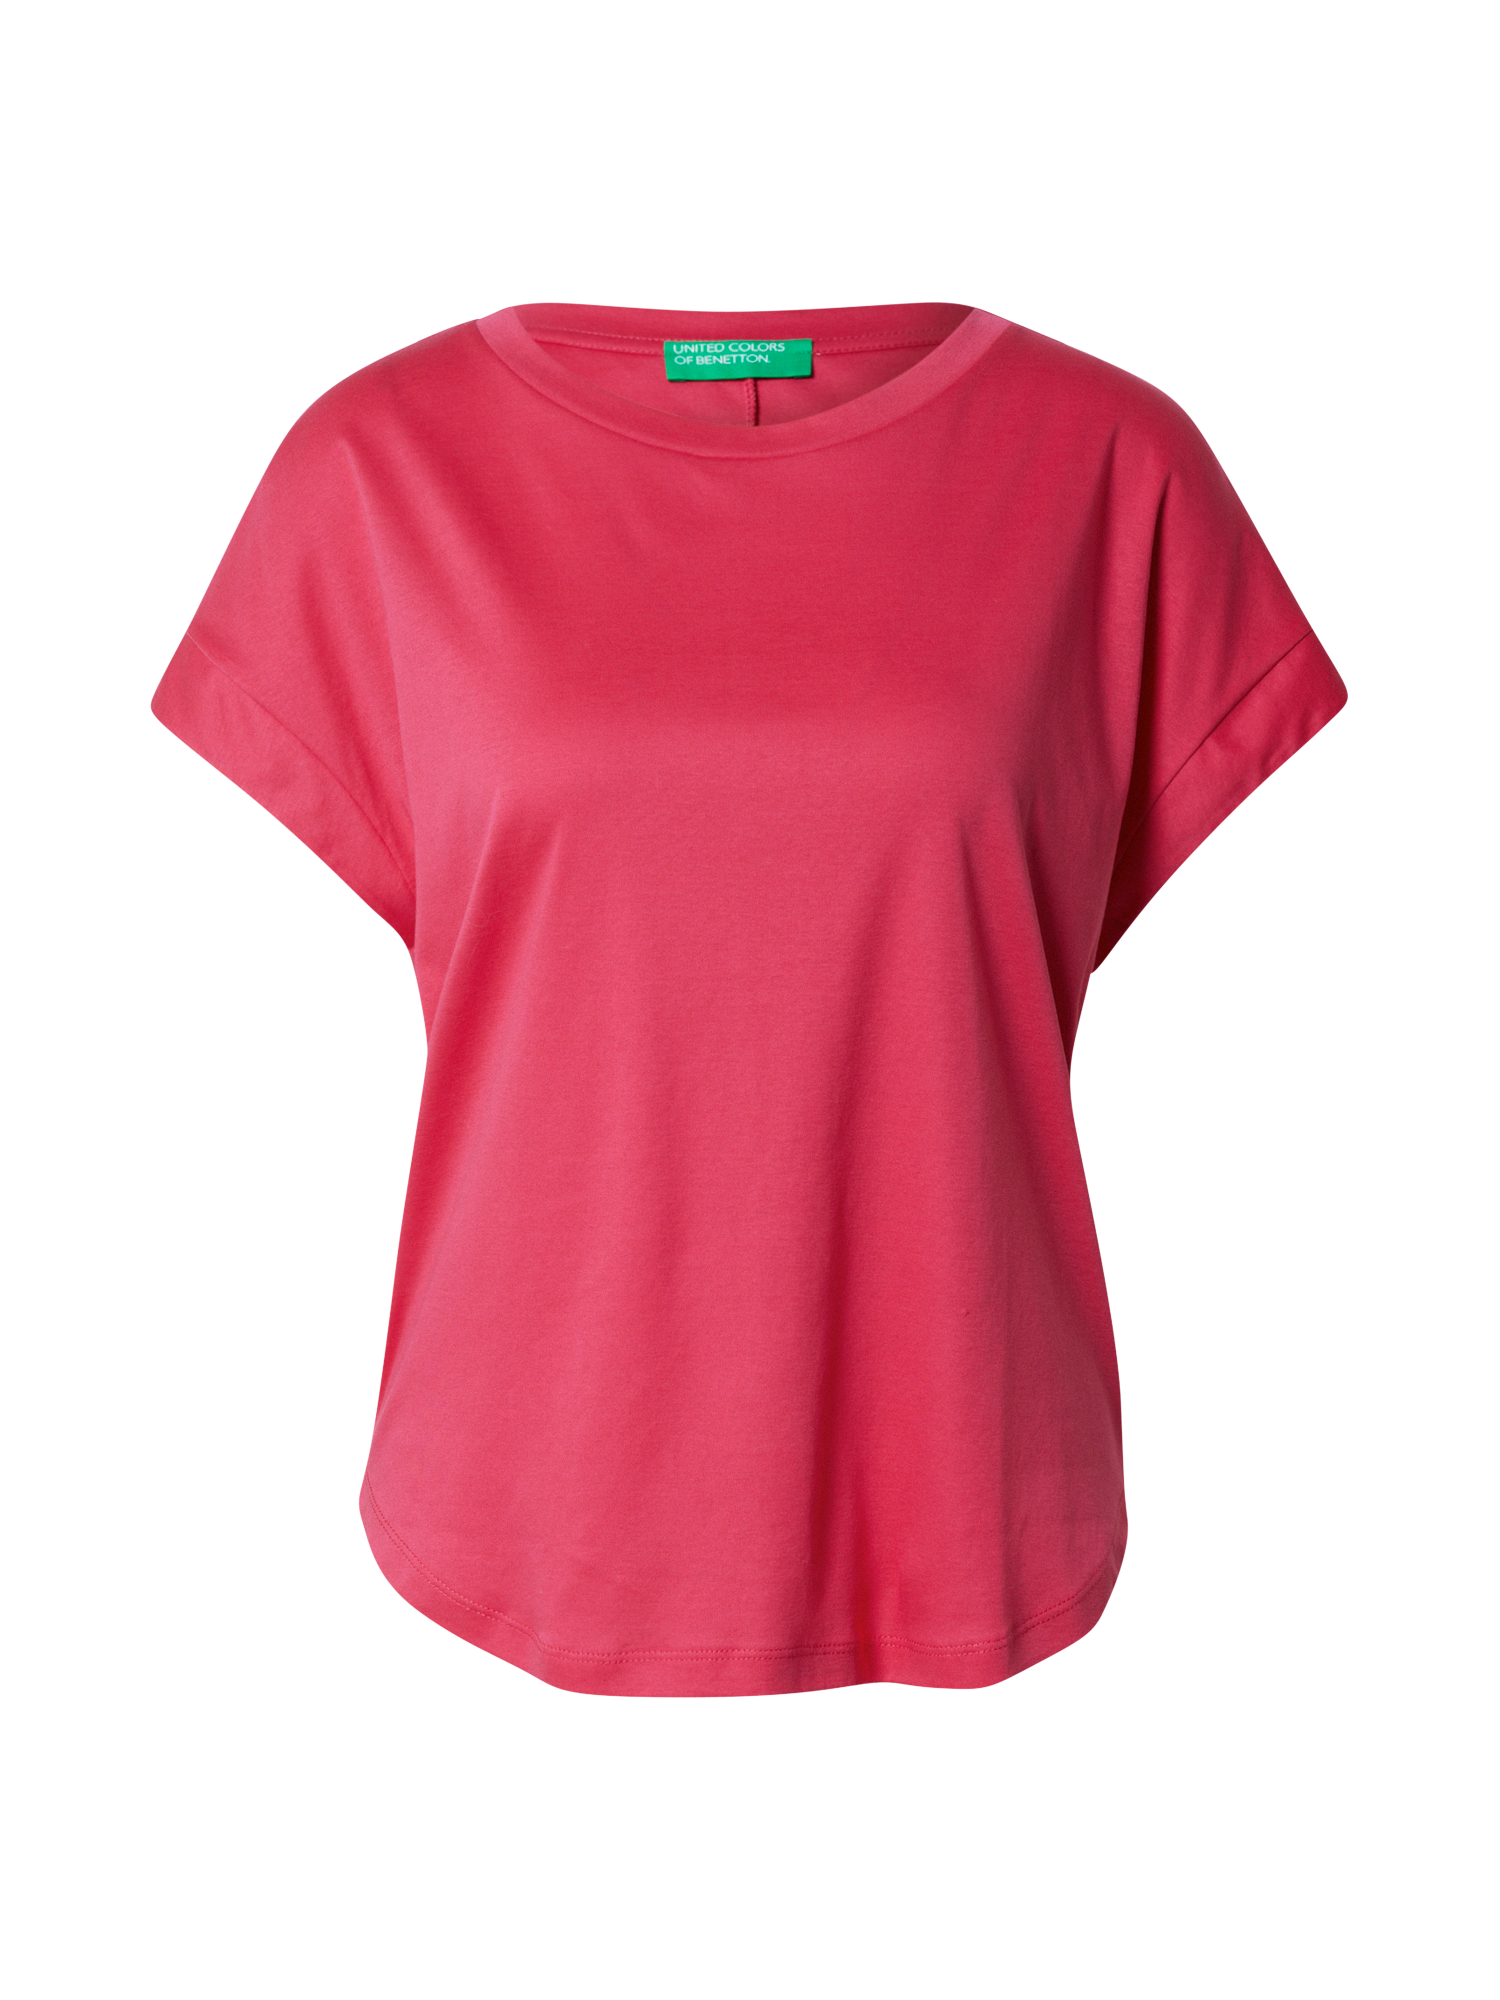 Odzież Koszulki & topy UNITED COLORS OF BENETTON Koszulka w kolorze Pitajam 